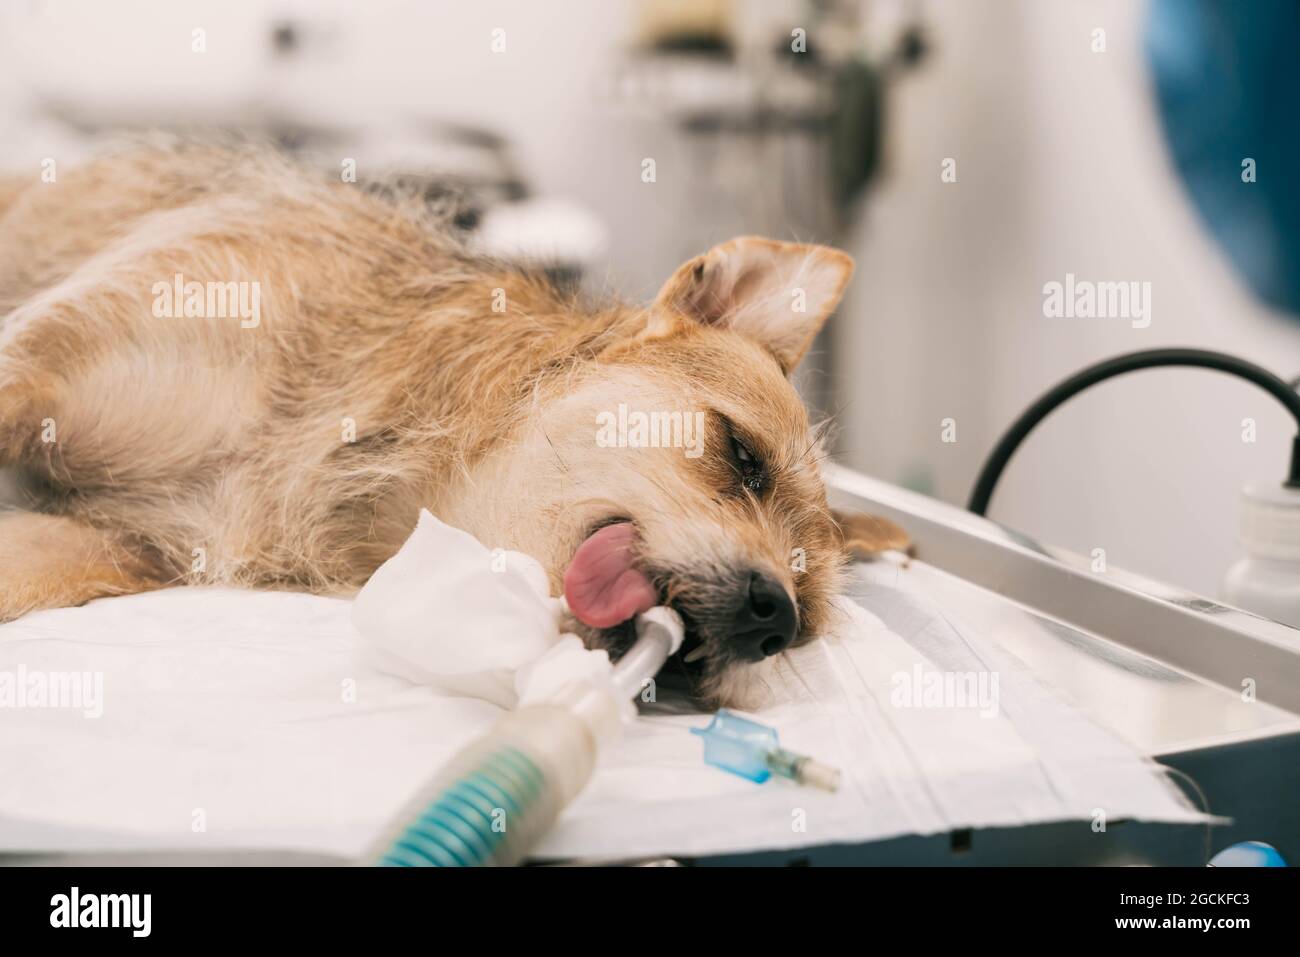 Hund unter Narkose mit Schlauch im Mund liegend auf Operationstisch während  der Operation in der Tierklinik Stockfotografie - Alamy